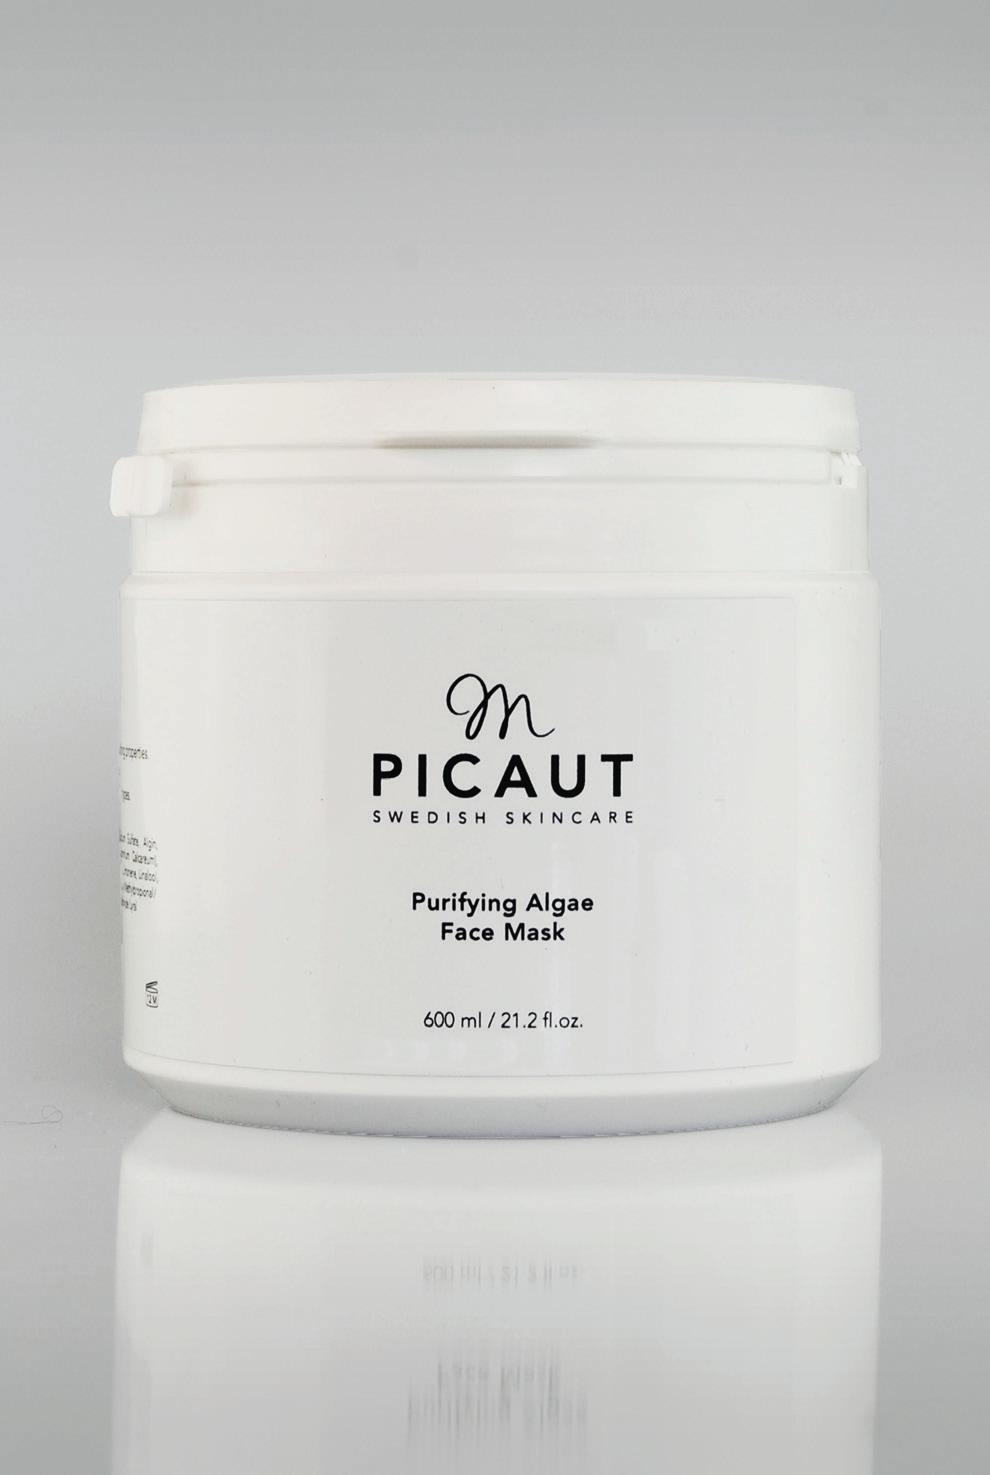 Purifying Algae Face Mask 600 ml (ca 43 msk) pulver, kabinprodukt. Funktion Rengörande och lugnande. Hudtillstånd Fet eller problem hud, även acne.